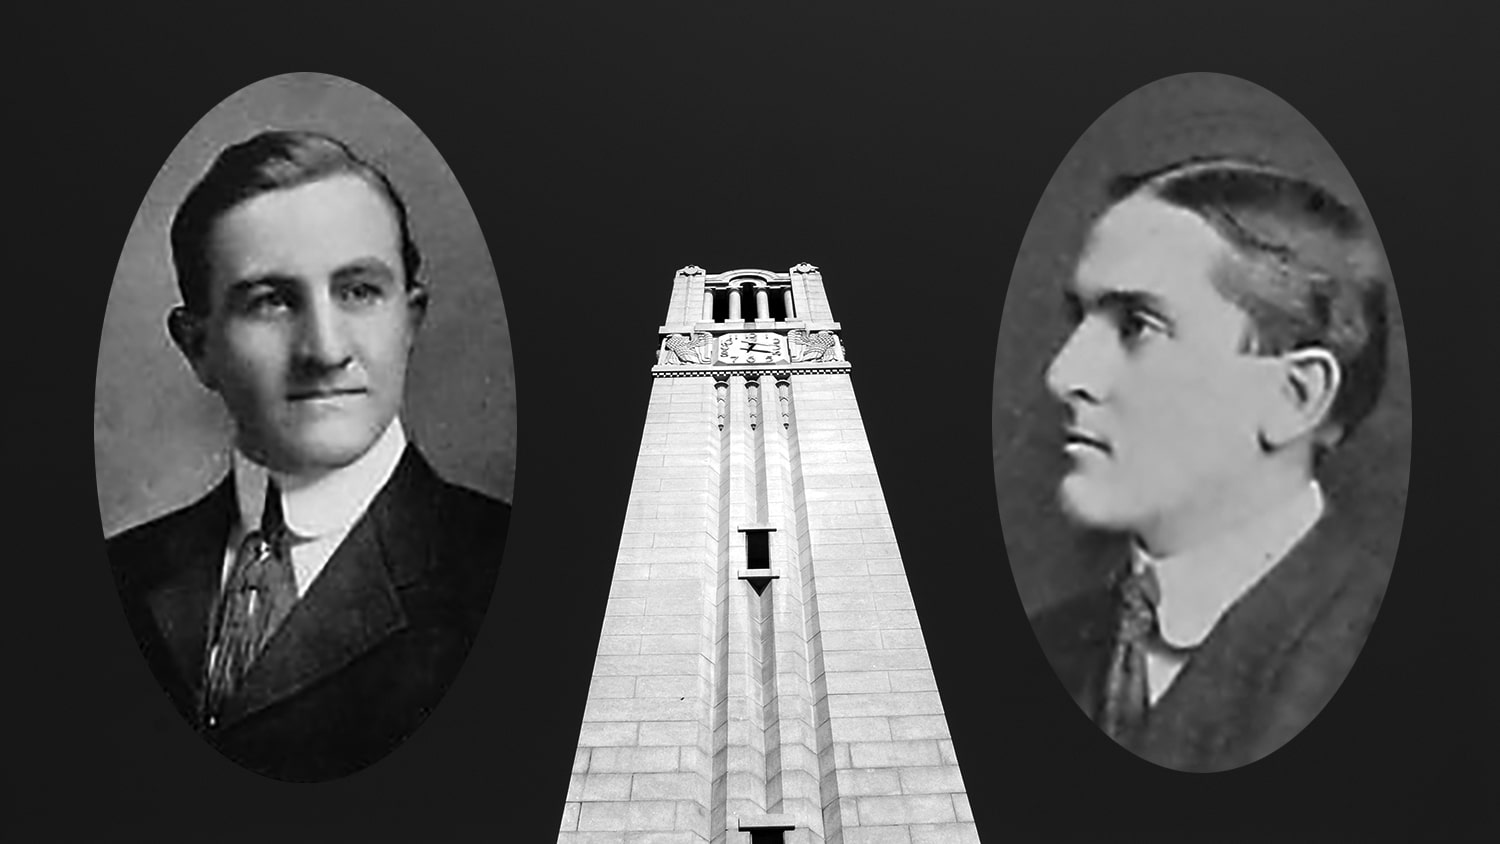 校友万斯·赛克斯(Vance Sykes)和弗兰克·汤普森(Frank Thompson)的档案照片与钟楼的图像形成对比。